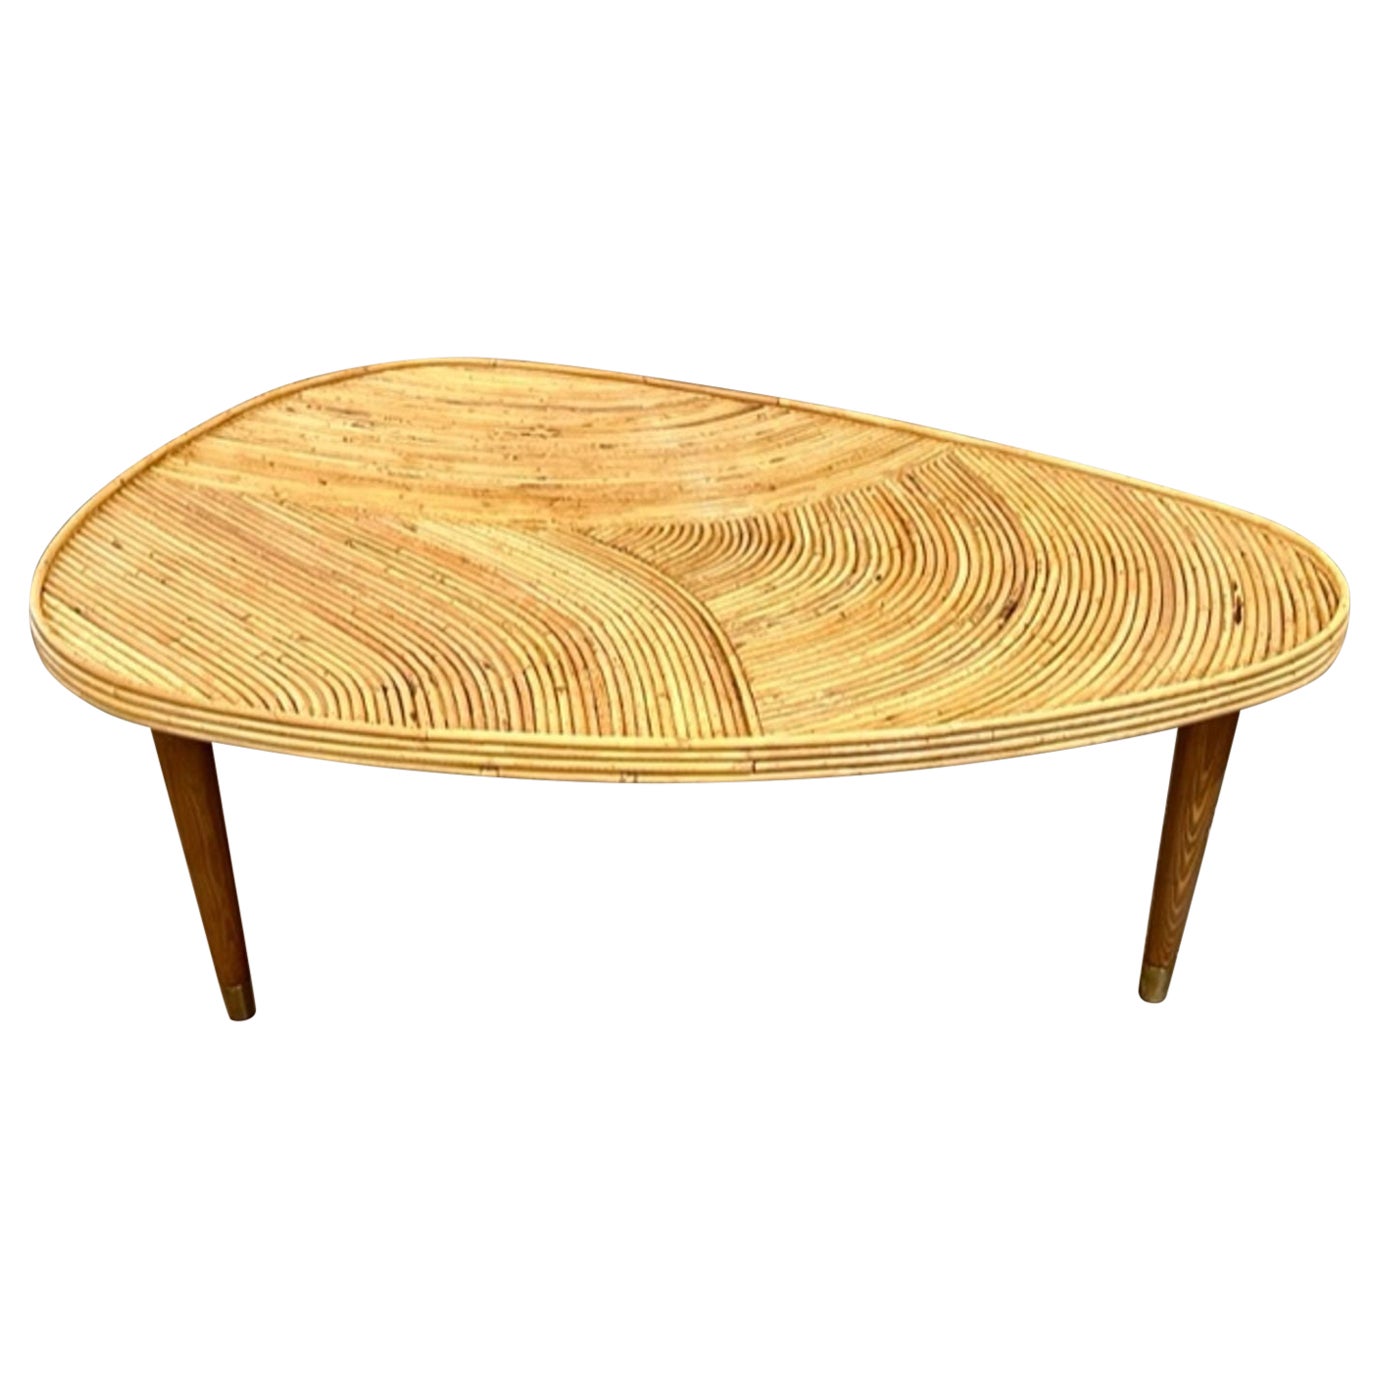 Table basse moderne en bambou